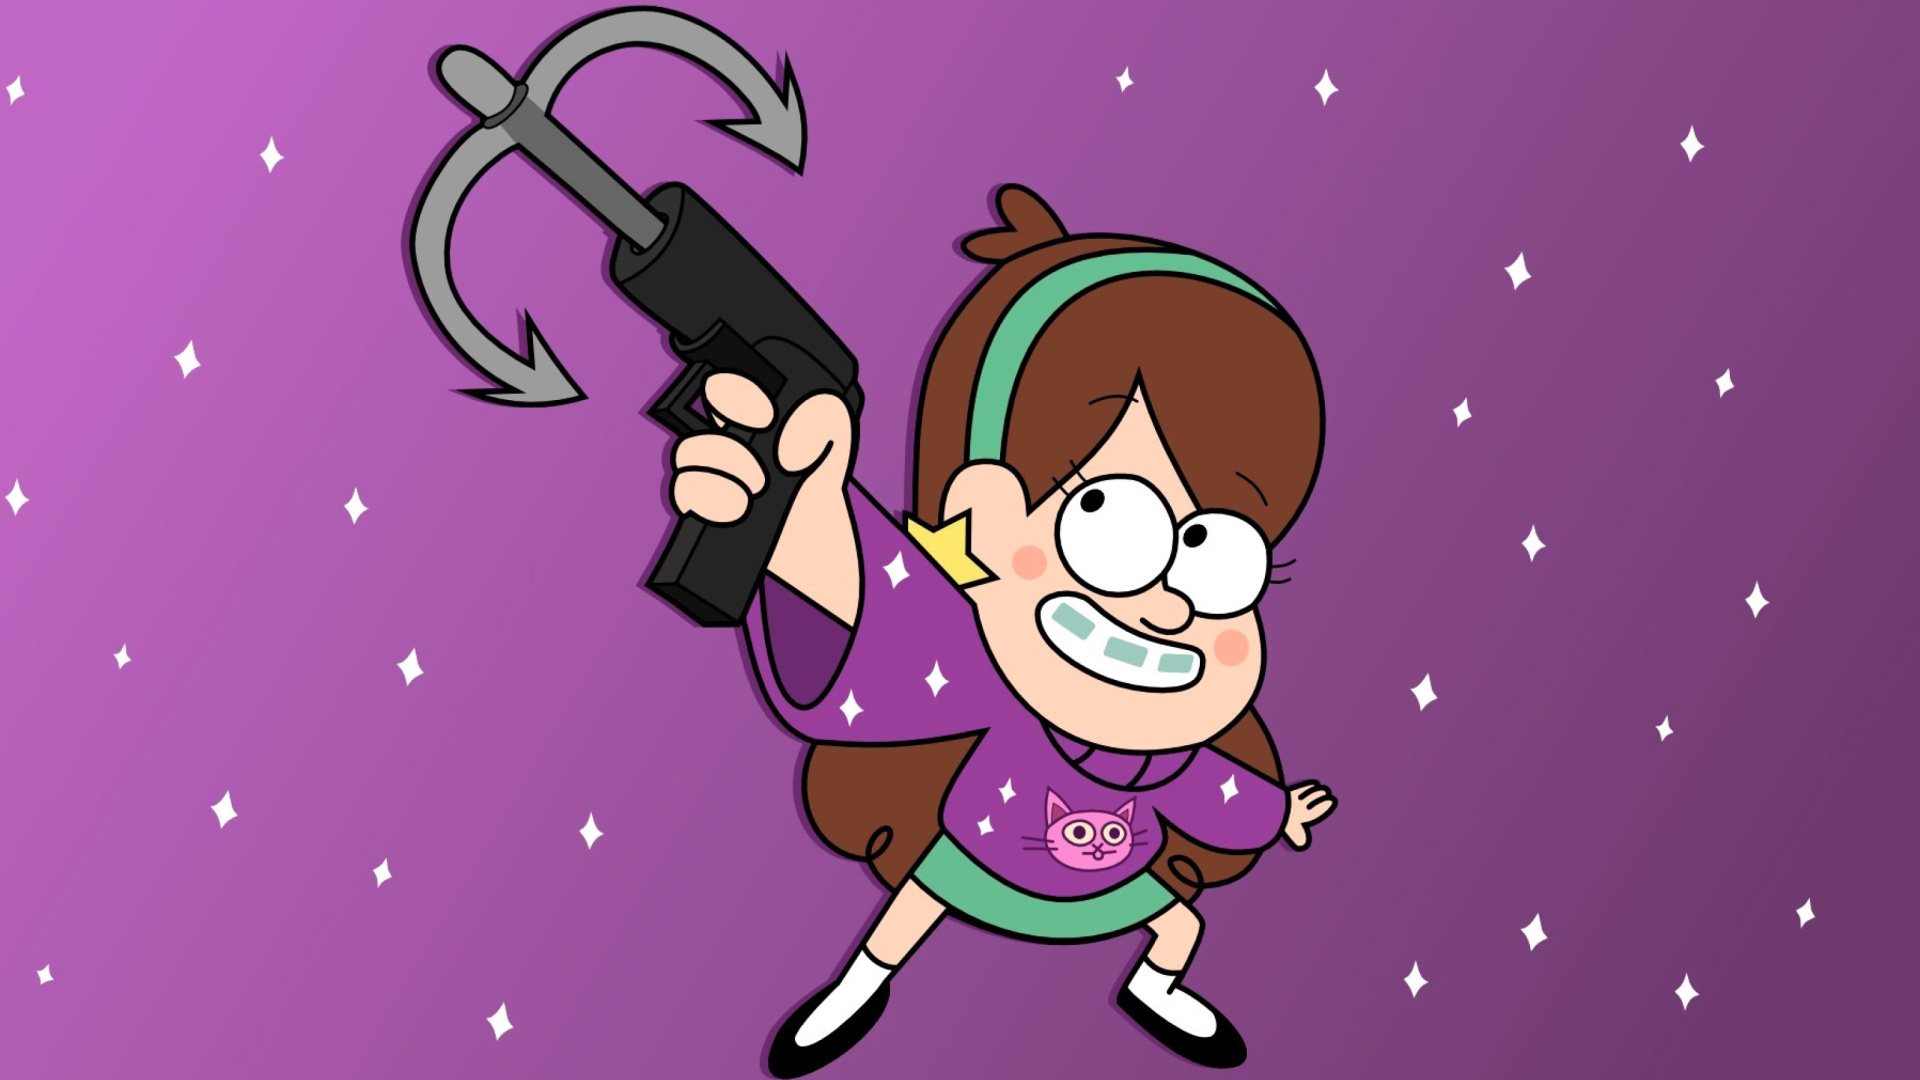 Mabel in Gravity Falls Cartoon screenshot #1 1920x1080